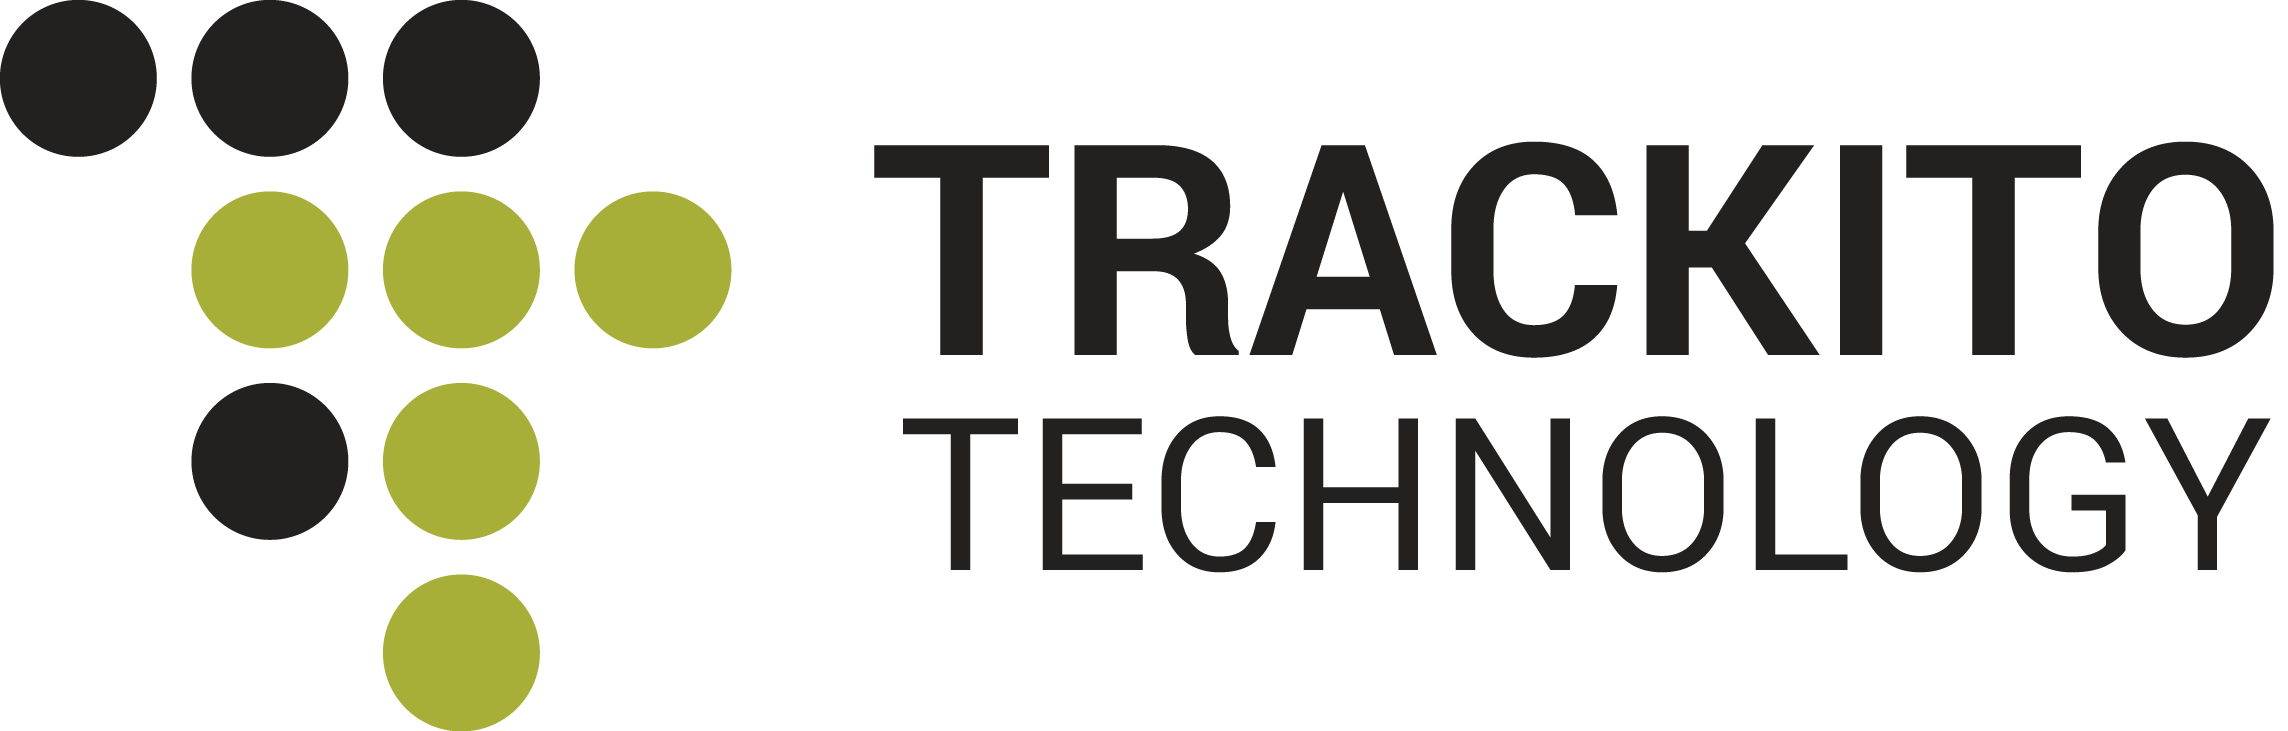 SMA cable 2 m (2 pcs) :: Trackito Technology E-shop